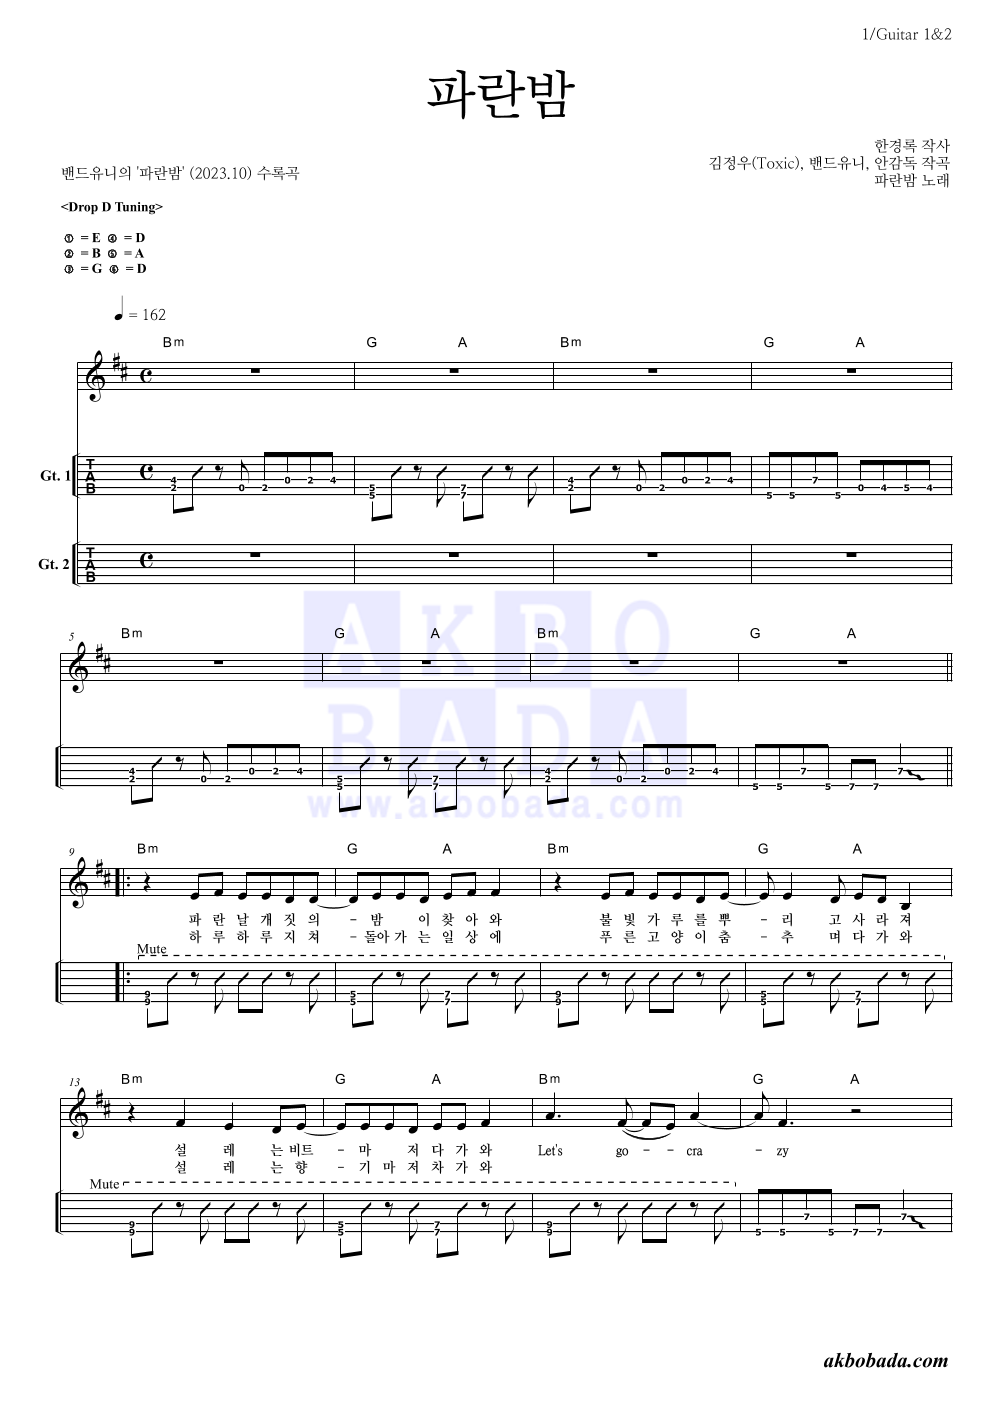 밴드유니 - 파란밤 기타(Tab) 악보 